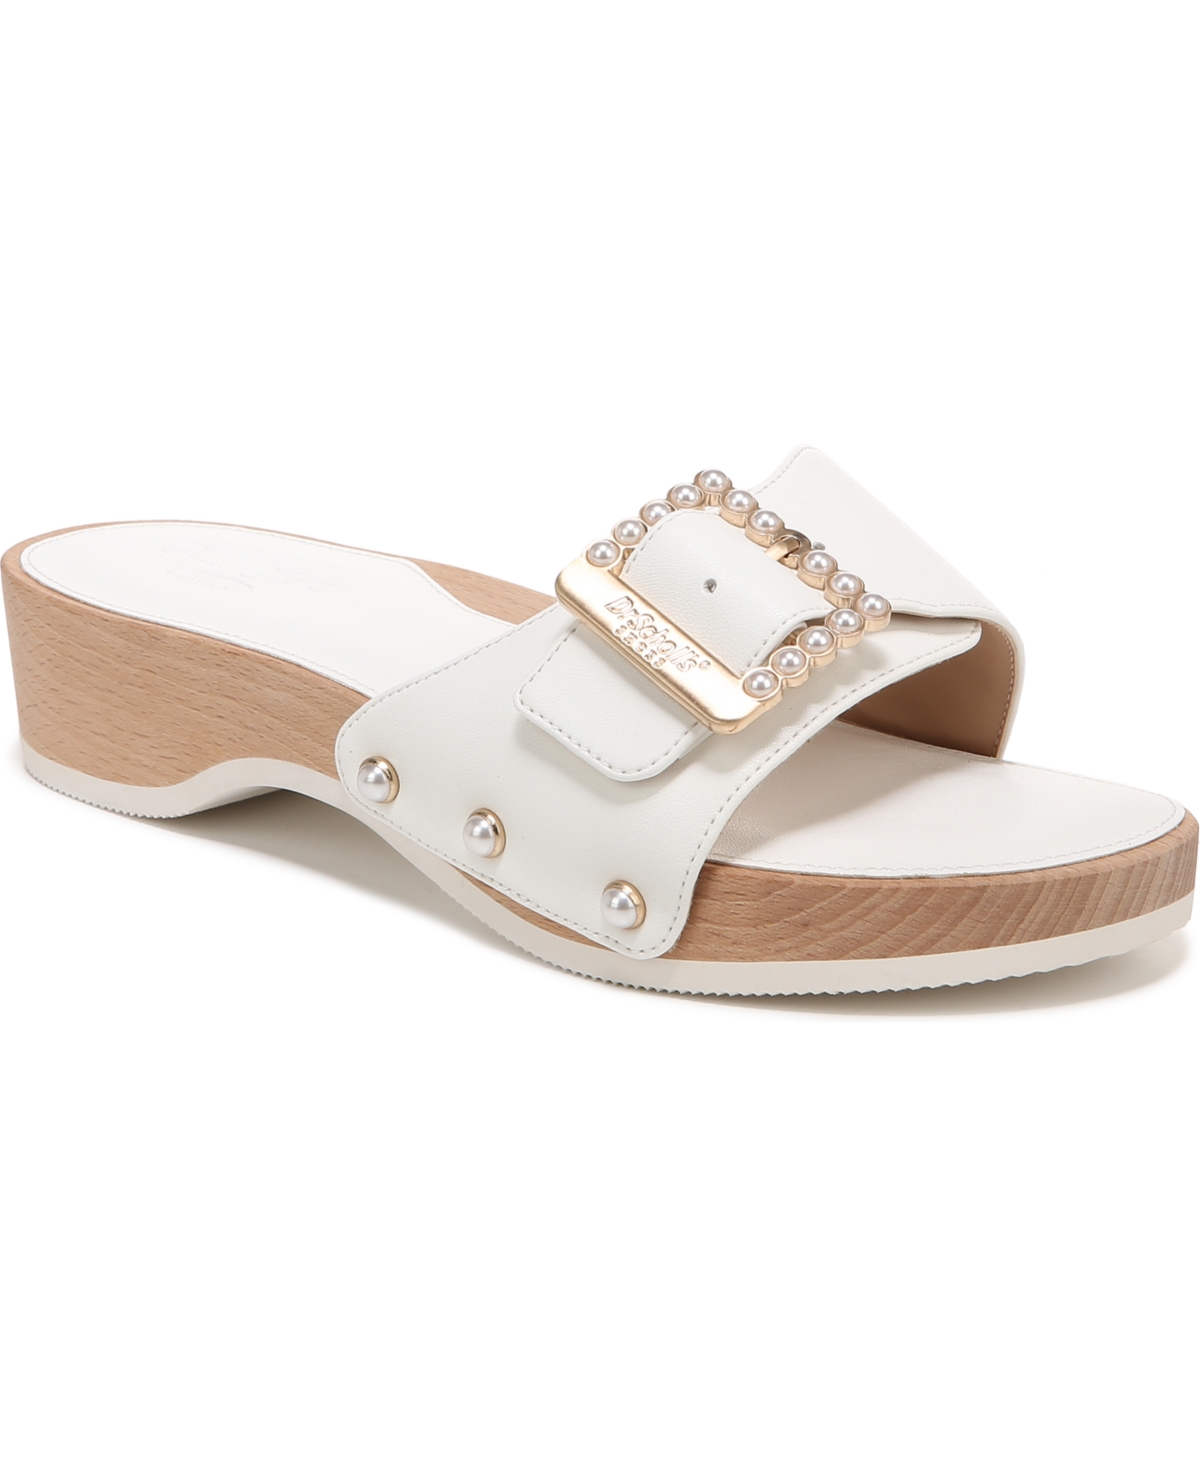 Women's Original-Mod Slide Sandals - White Faux Leather